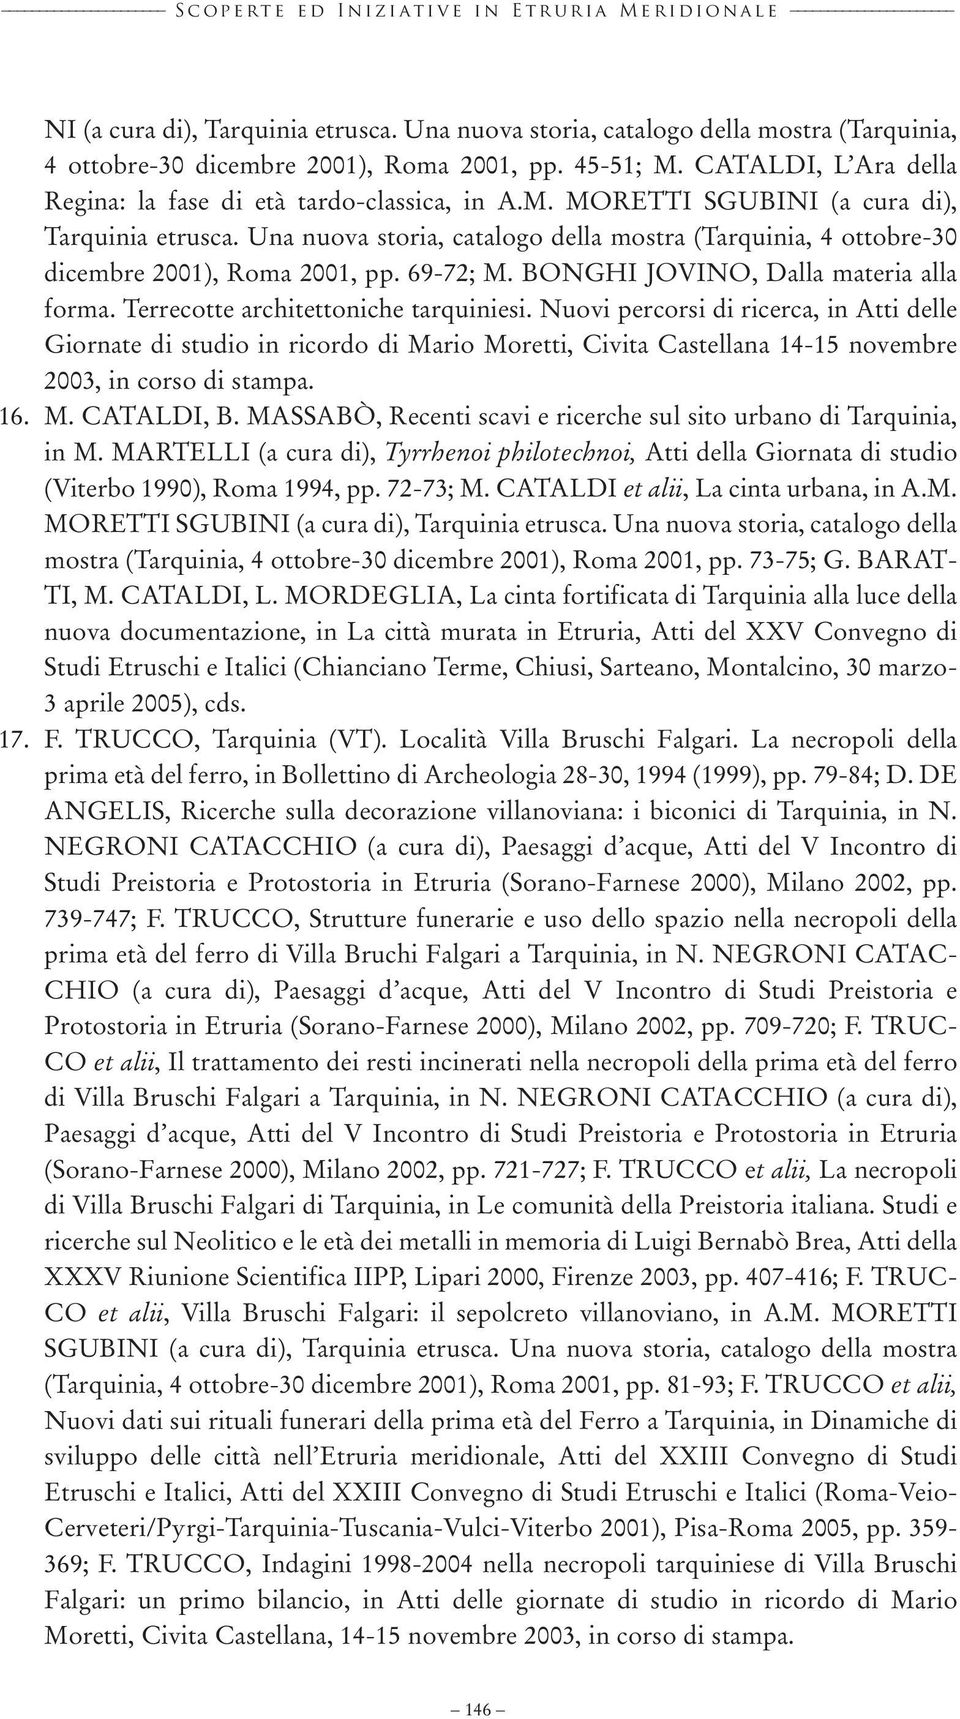 Una nuova storia, catalogo della mostra (Tarquinia, 4 ottobre-30 dicembre 2001), Roma 2001, pp. 69-72; M. BONGHI JOVINO, Dalla materia alla forma. Terrecotte architettoniche tarquiniesi.